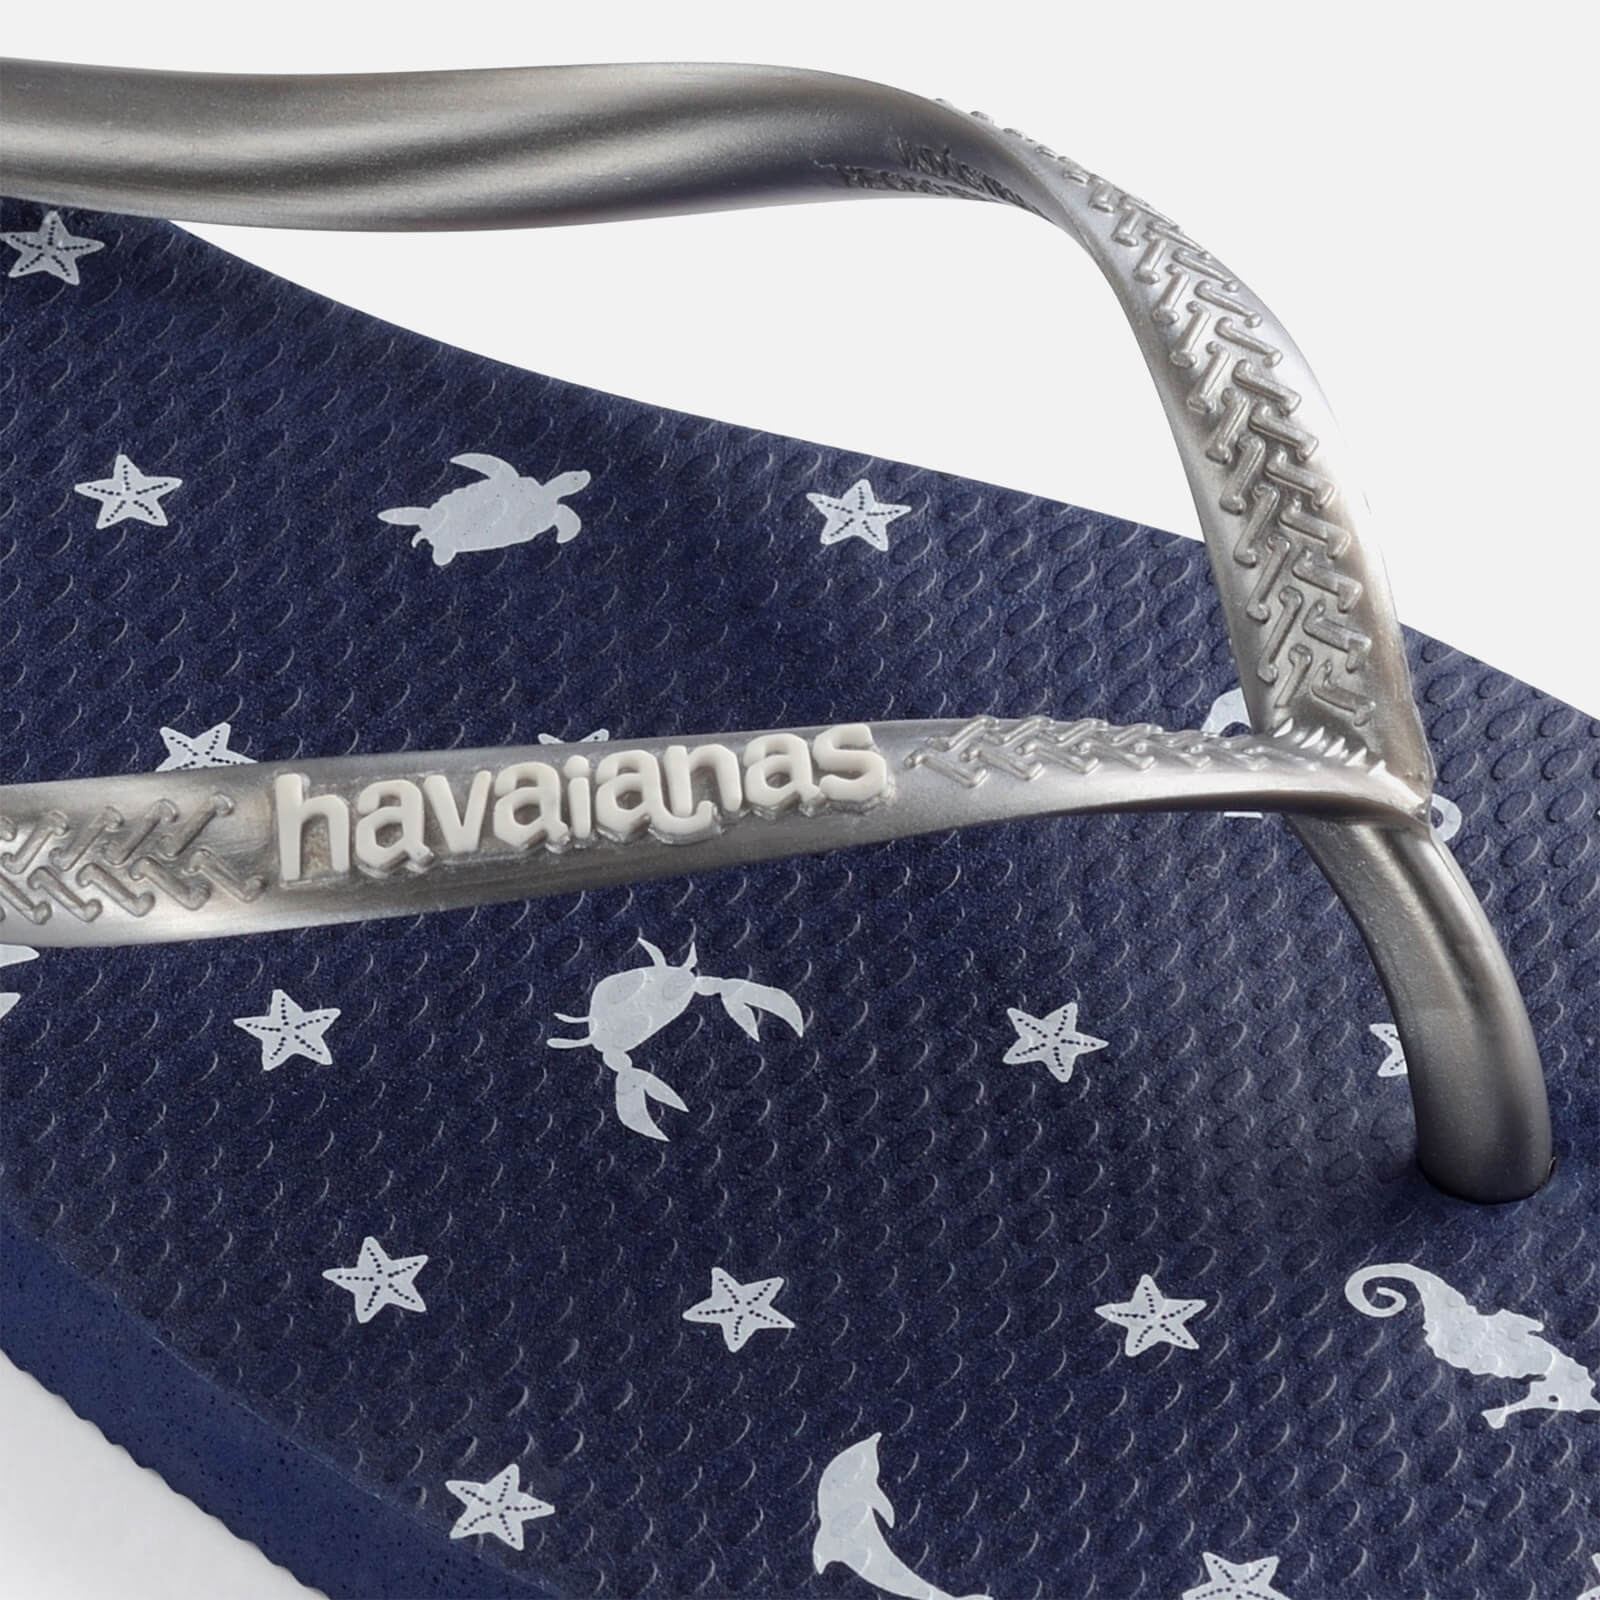 Havaianas Women's Slim Nautical Flip Flops - Navy/silver - Uk 6/uk 7 4137125 0445 Mens Footwear, Blue